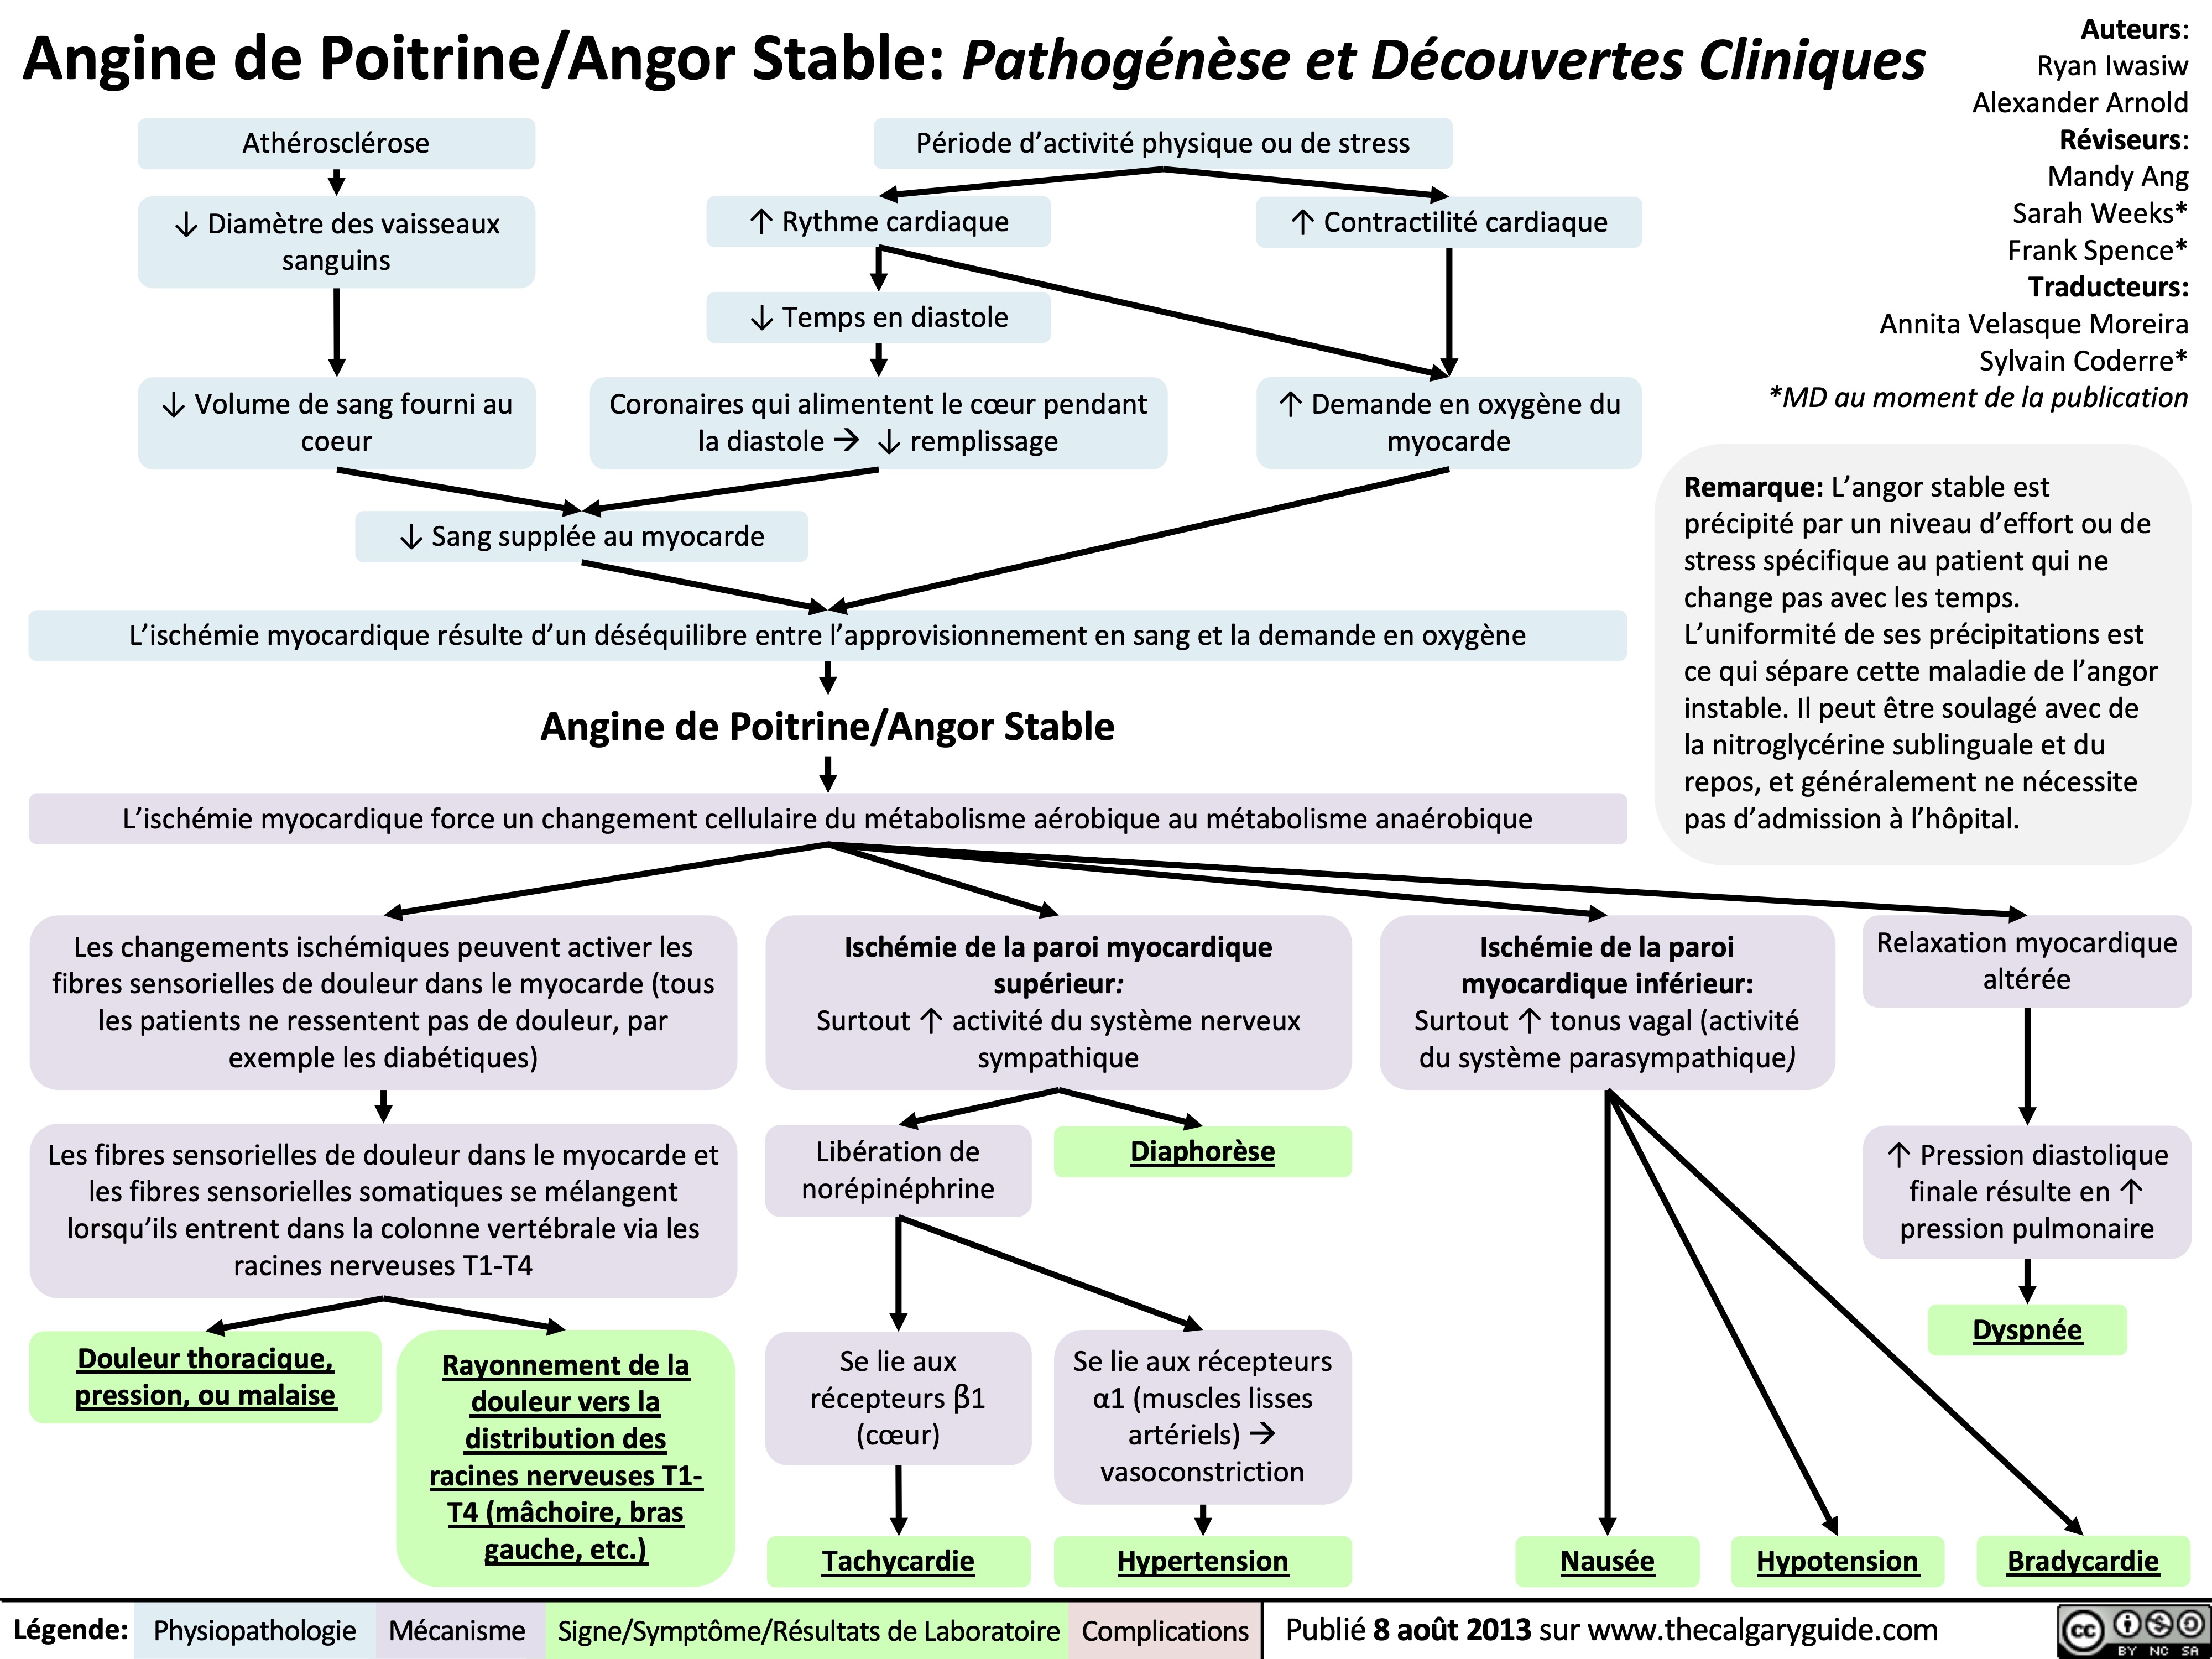 Angine de Poitrine/Angor Stable: Pathogénèse et Découvertes Cliniques